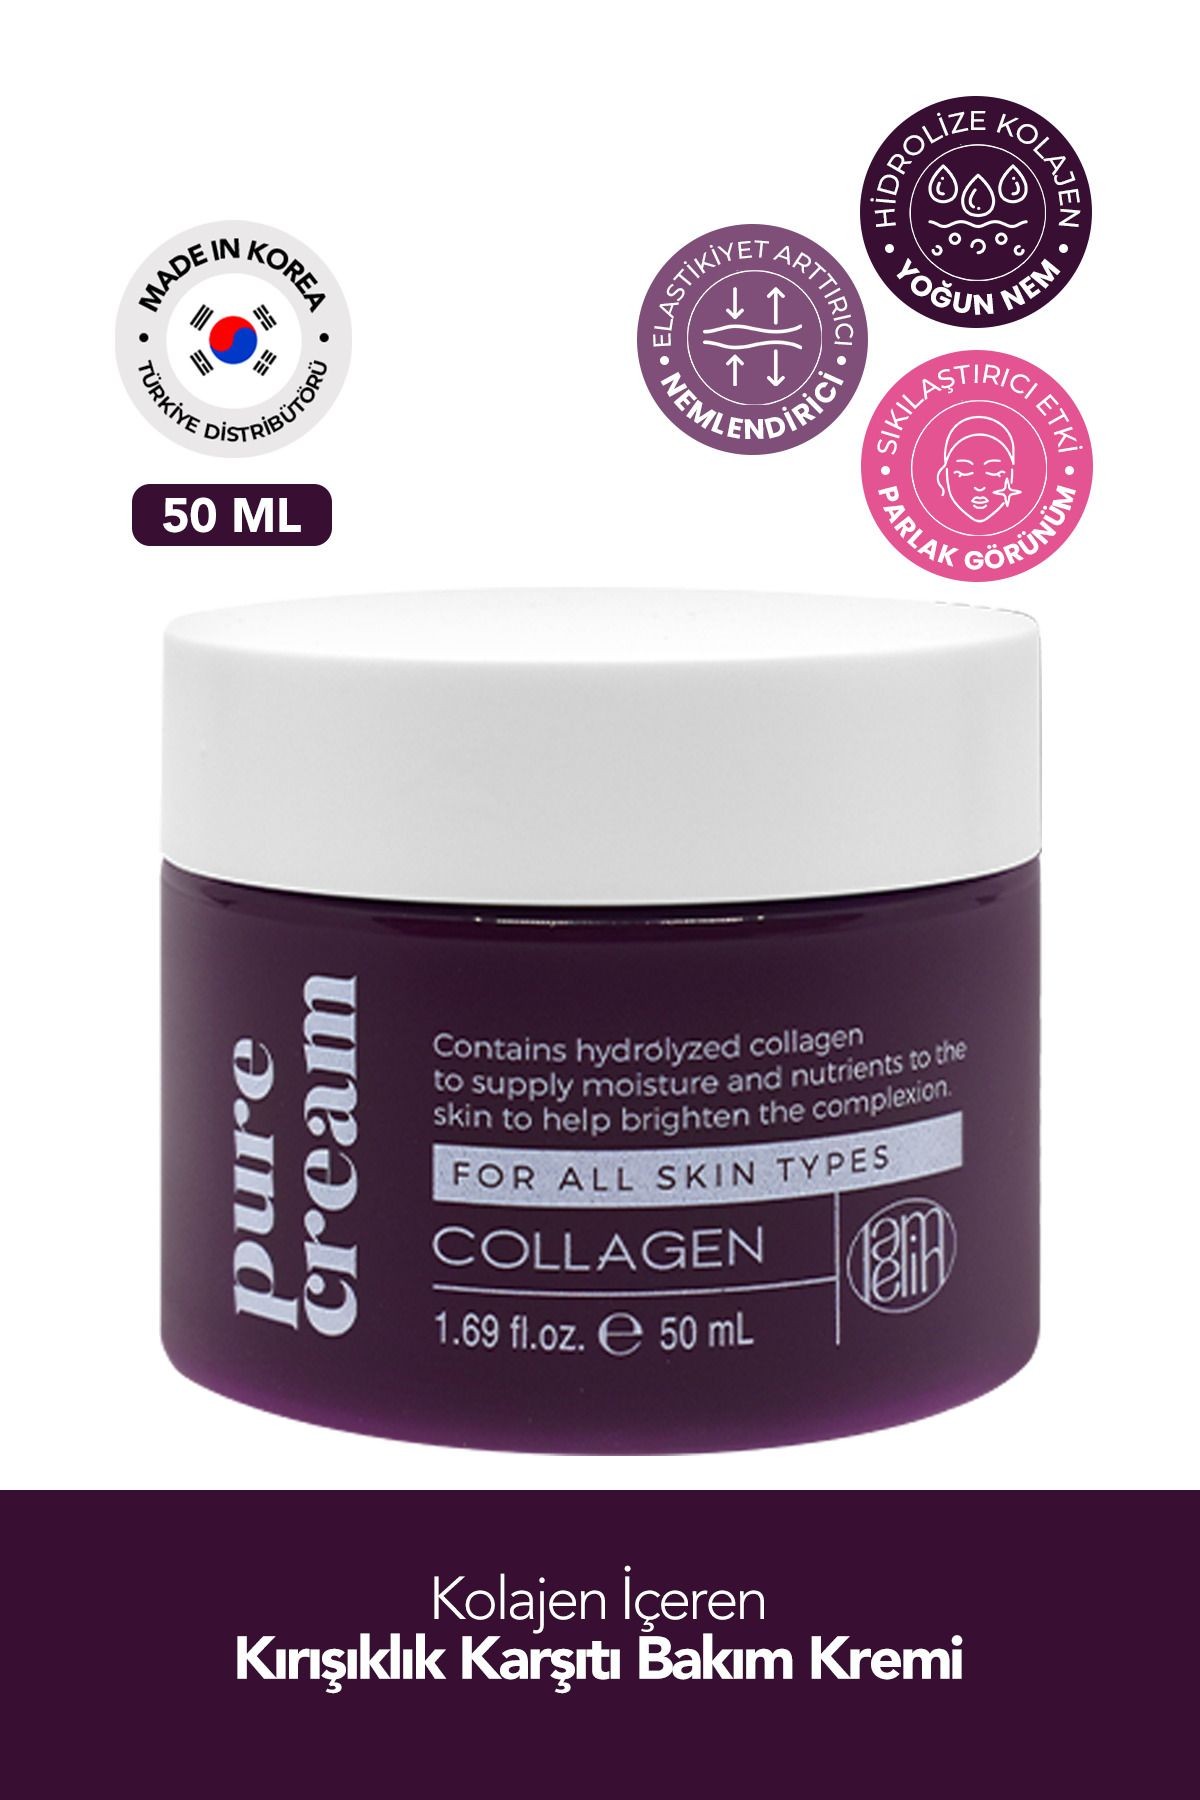 Kolajen İçeren Kırışıklık Karşıtı, Sıkılaştırıcı Bakım Kremi Lamelin Collagen Pure Cream 50 ml